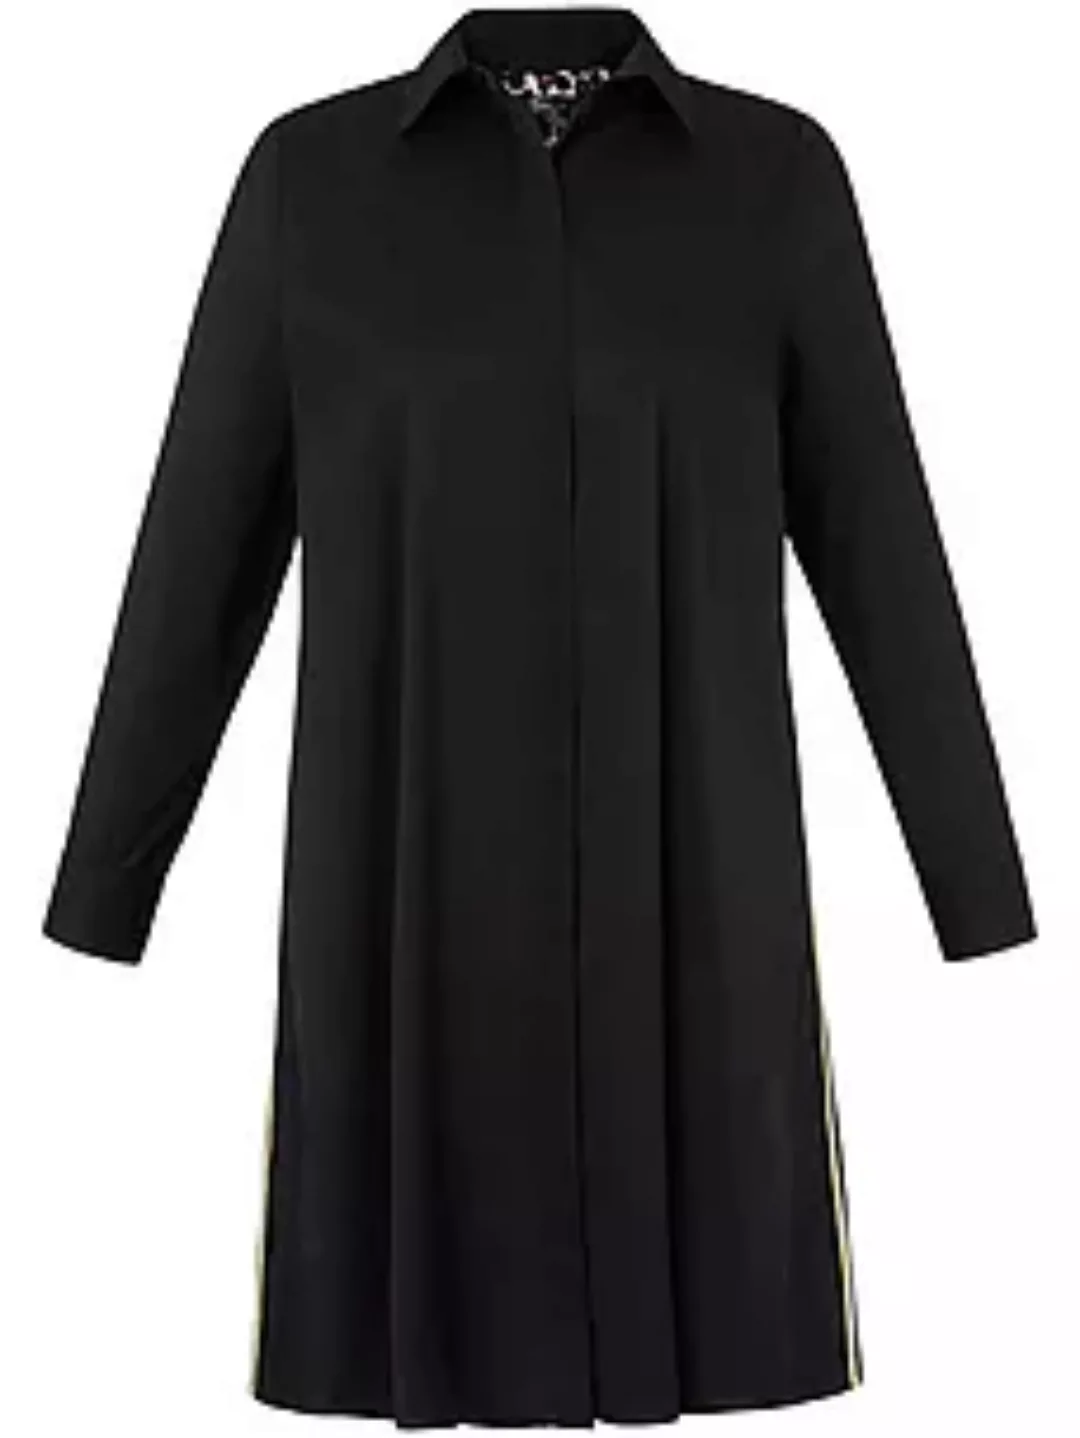 Hemdblusen-Kleid frapp schwarz günstig online kaufen